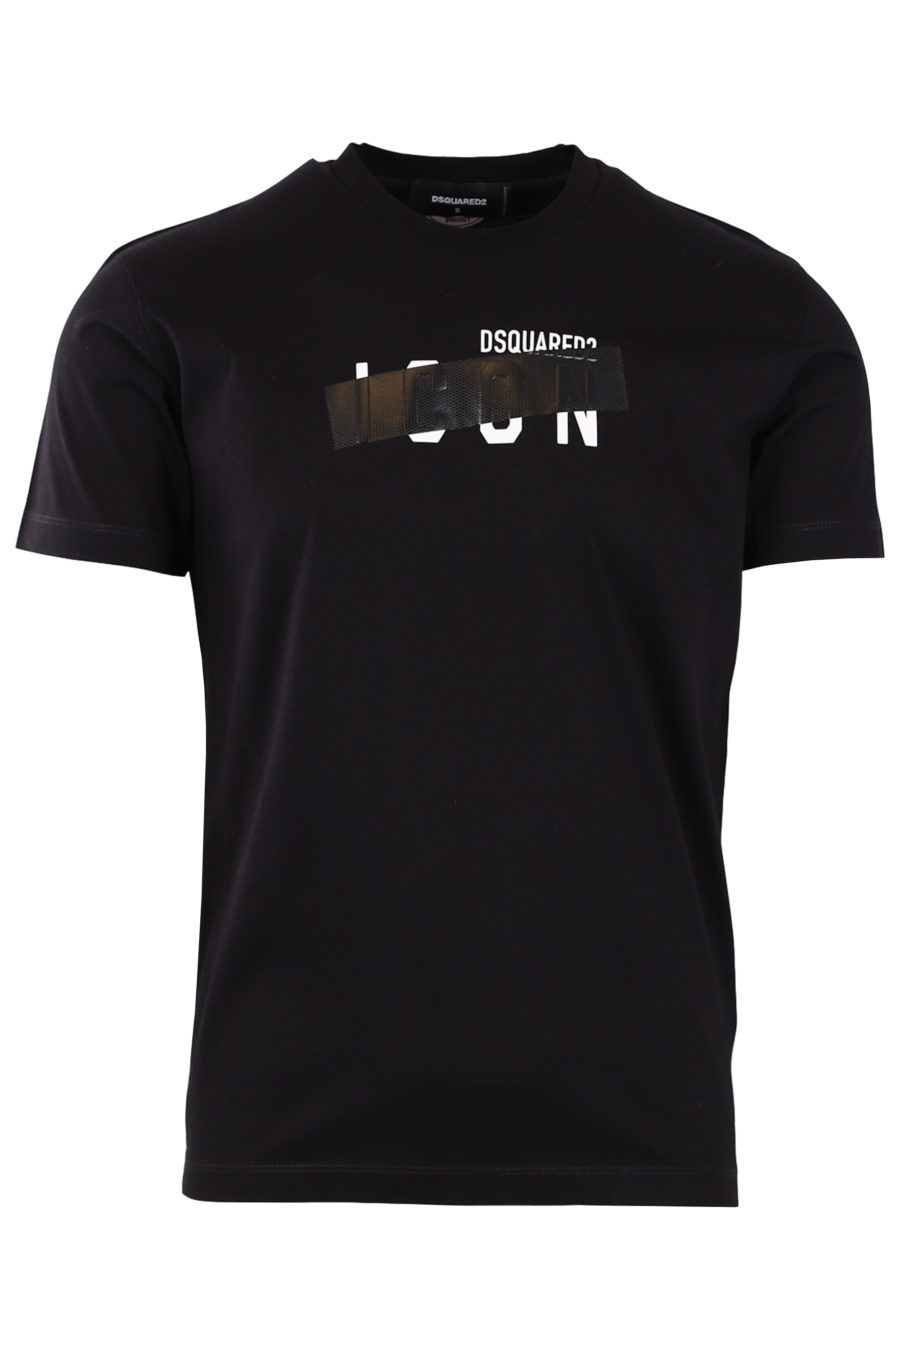 Camiseta negra con logotipo "Icon" tachado - 9d9f99e5c696b7bbd89b3c815b729464b27abc44